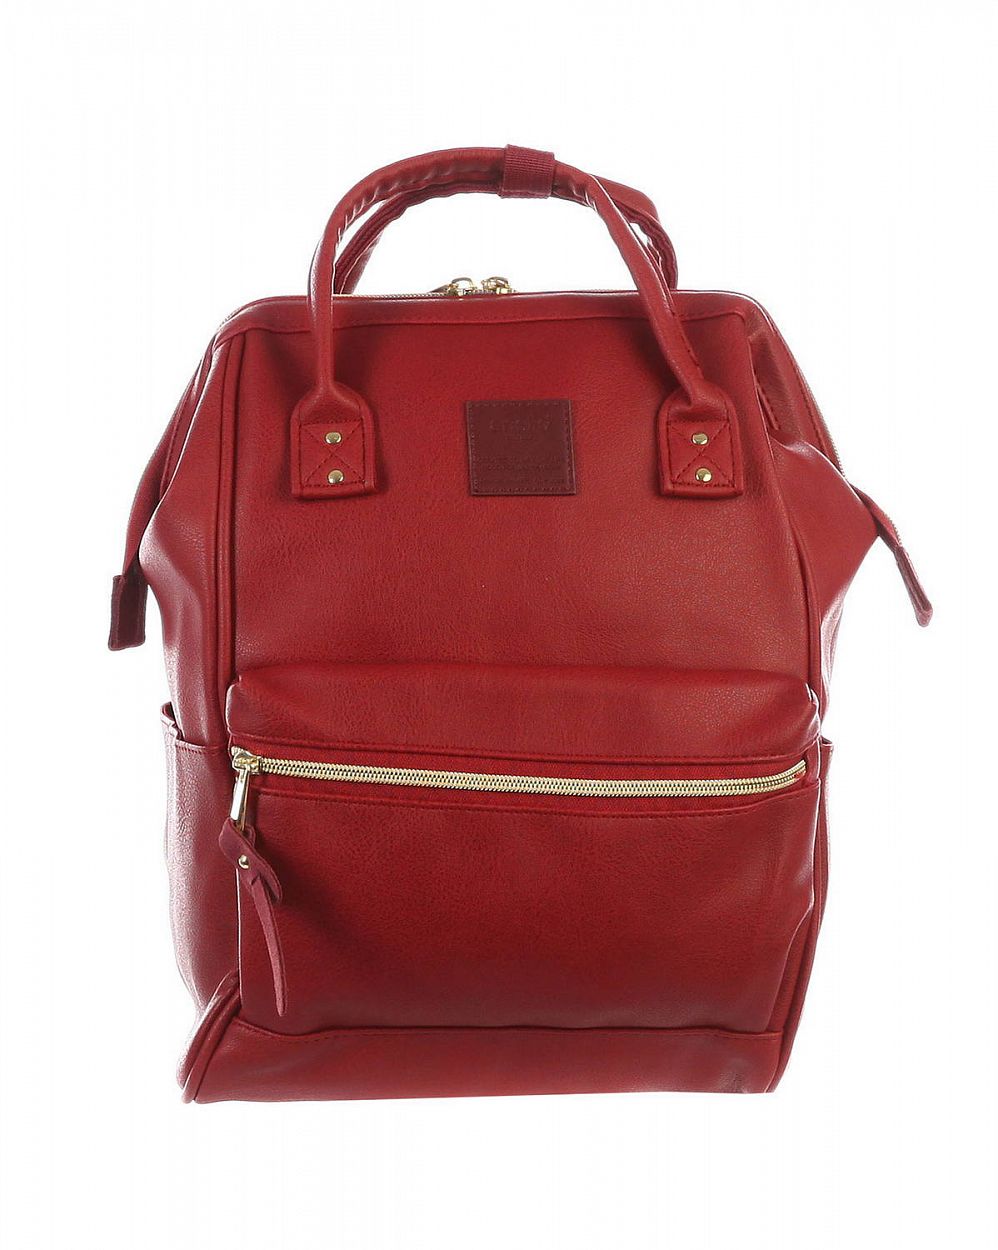 Рюкзак с двумя ручками кожаный Anello Japan AT-B1212 Red Wine отзывы